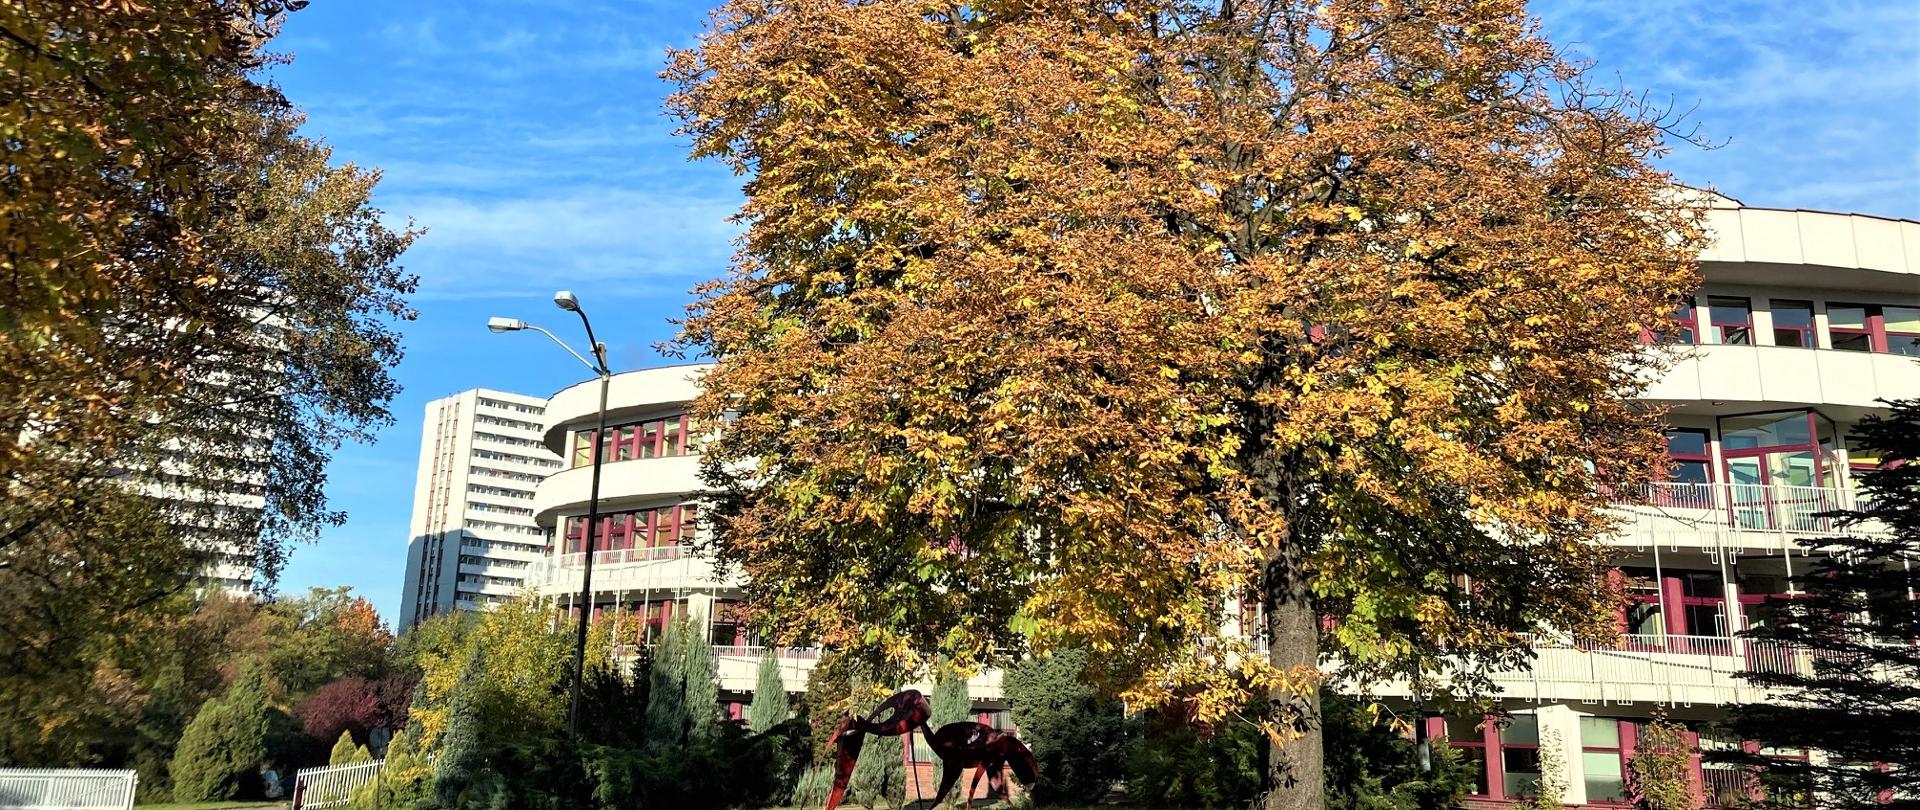 drzewo z jesiennymi liśćmi w tle budynek ZPSM im. W Kilara 